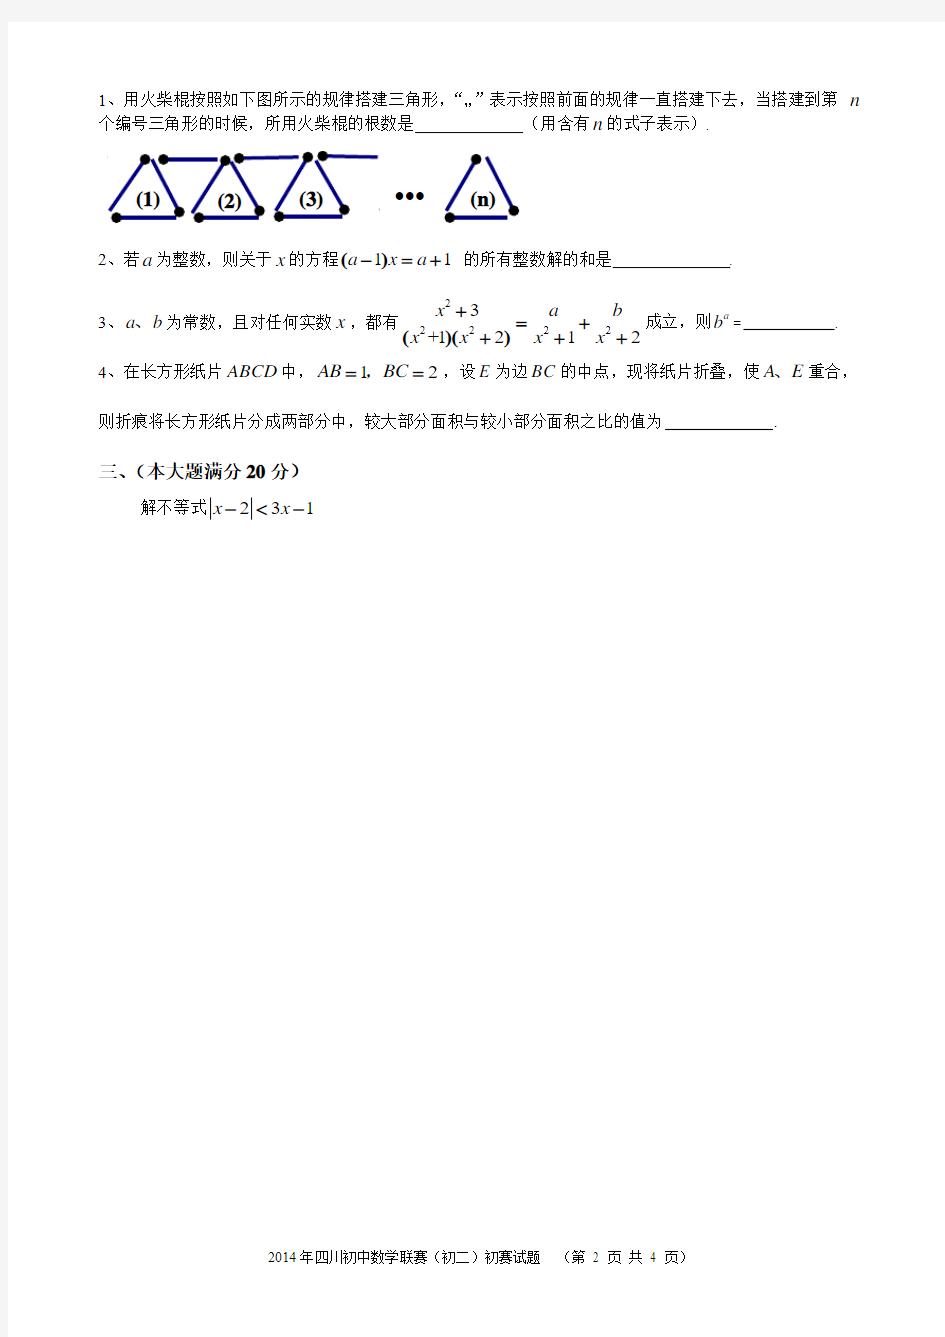 四川省2014年全国初中数学联赛(初二组)初赛试卷